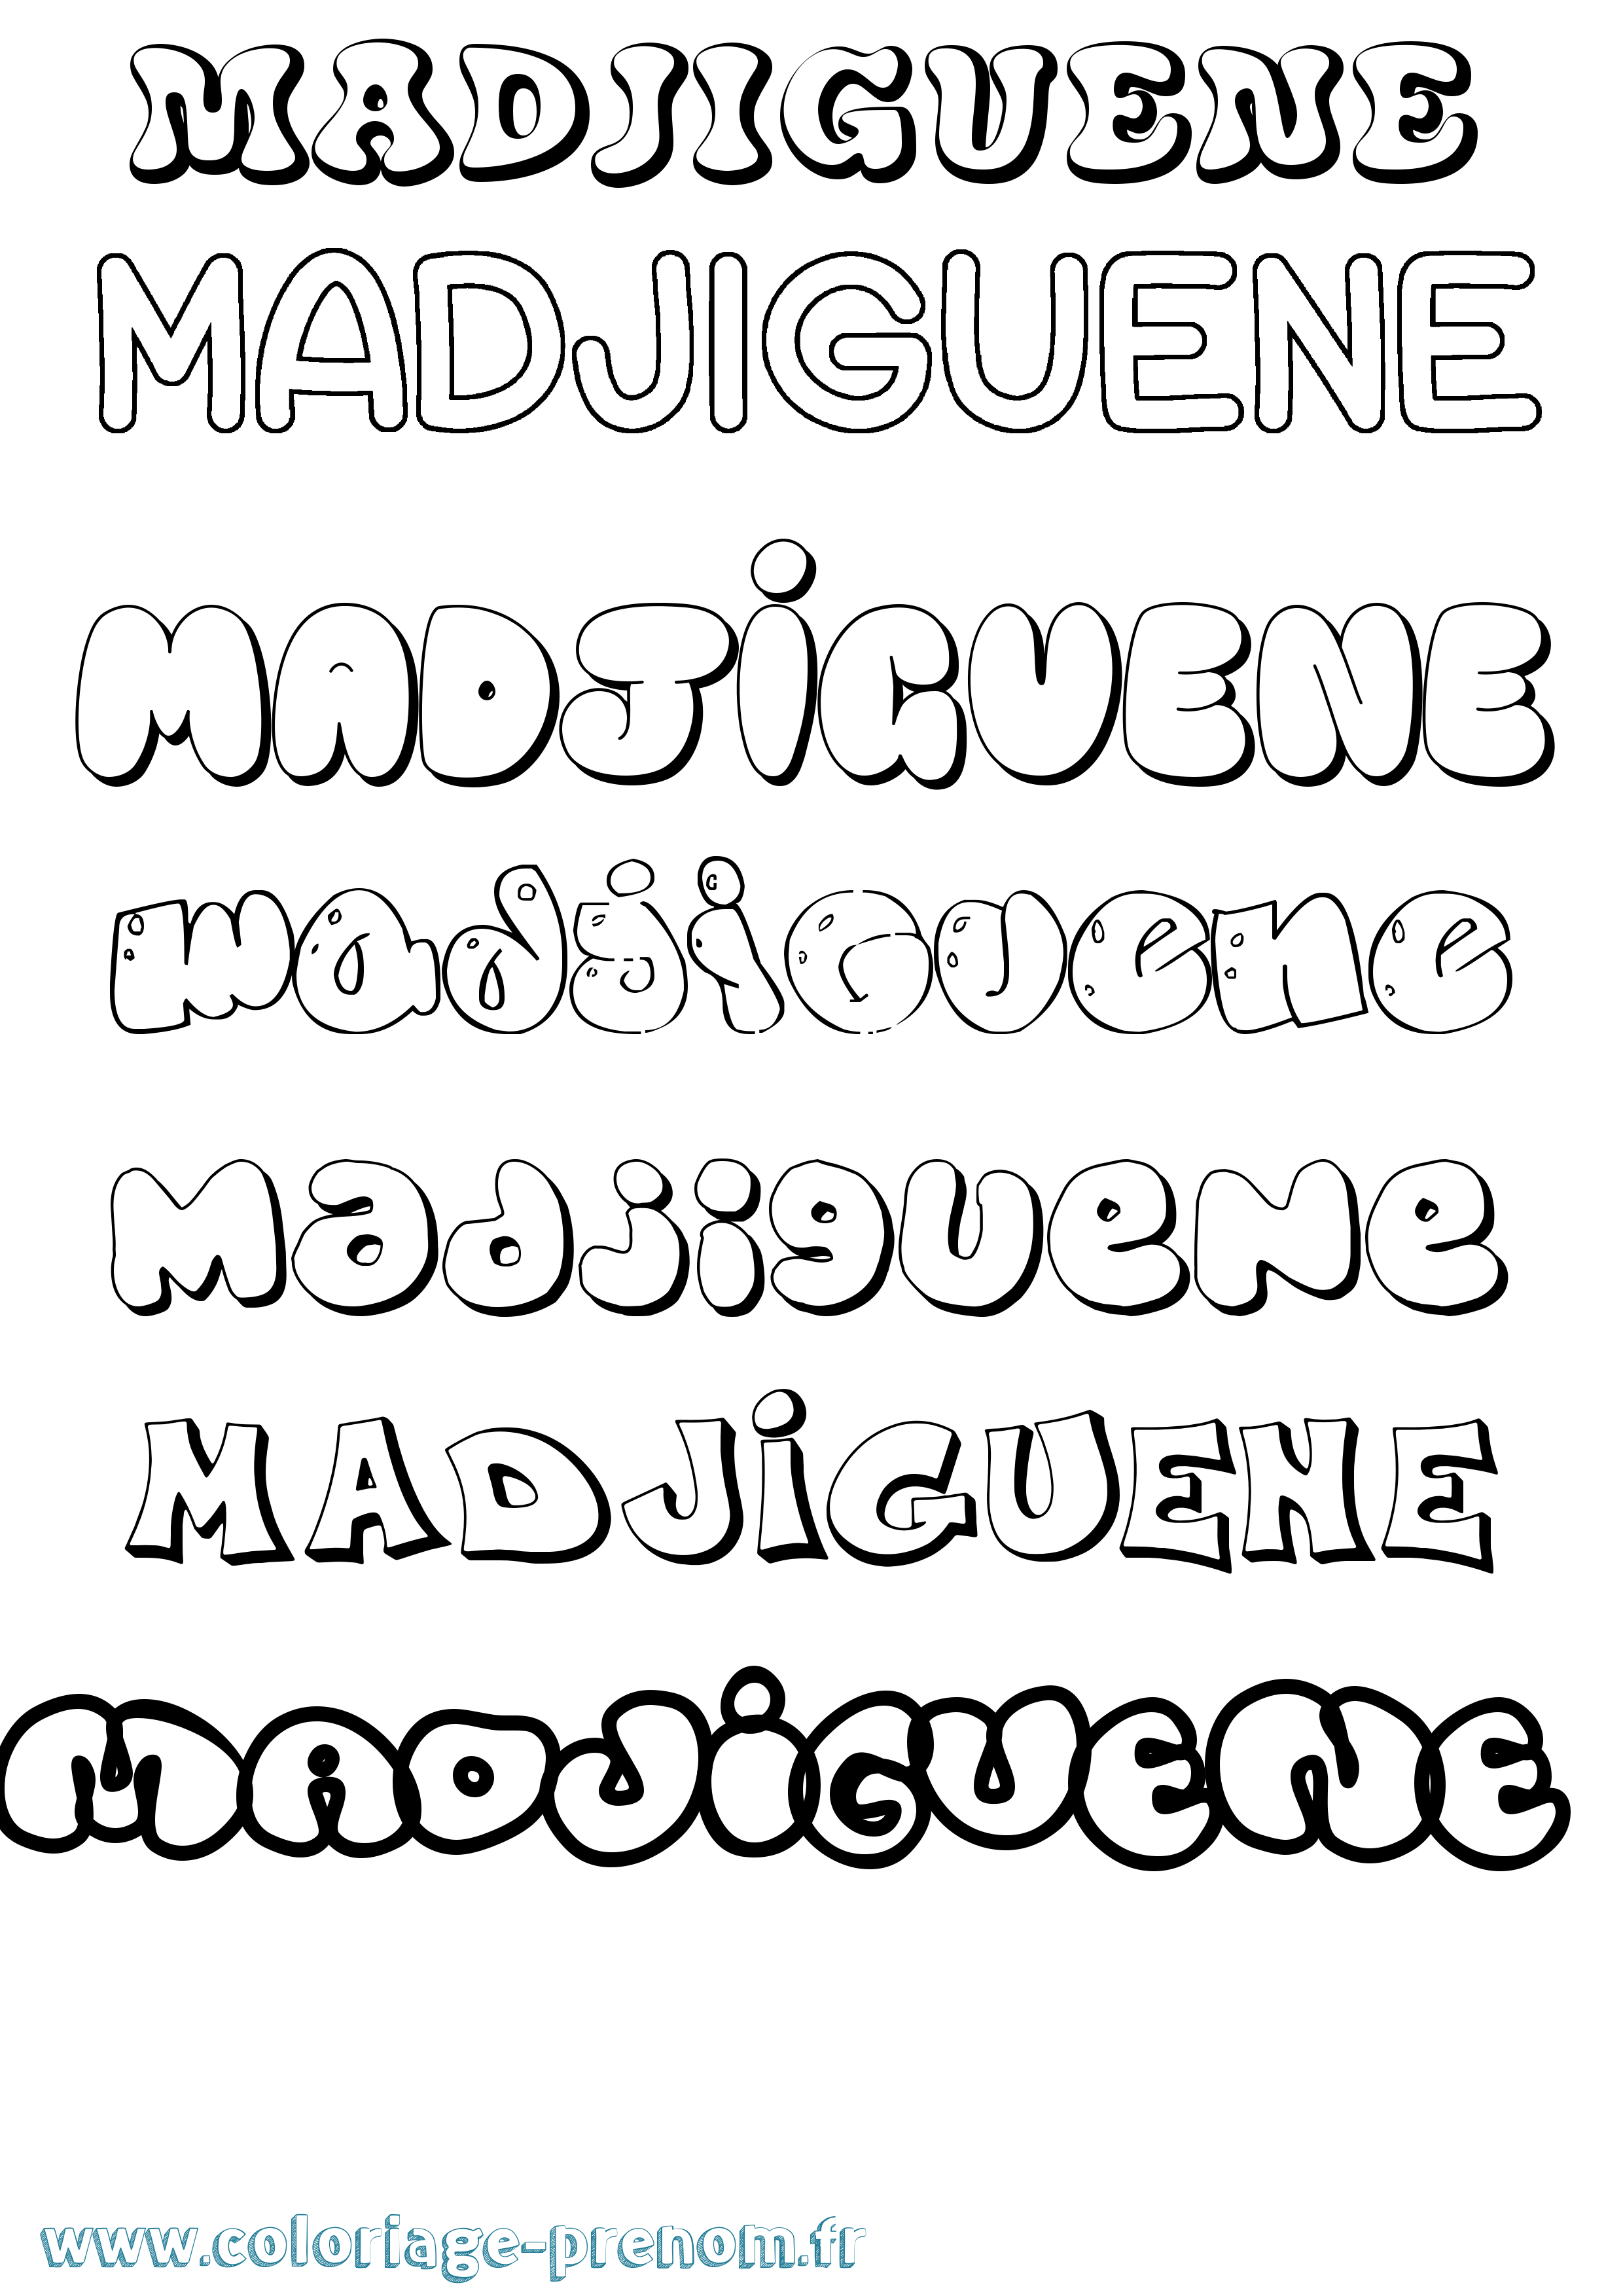 Coloriage prénom Madjiguene Bubble